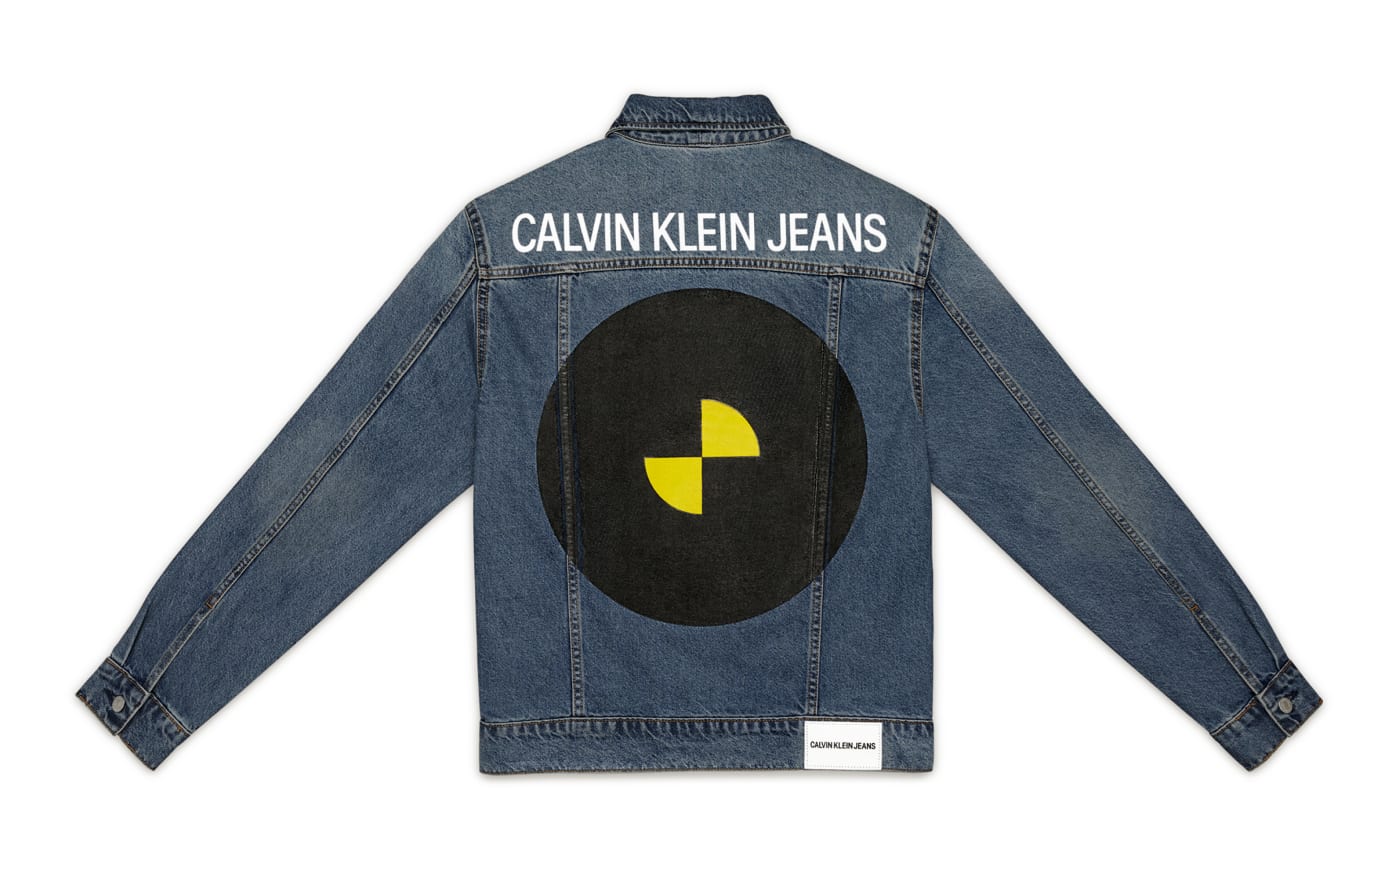 Calvin Klein ASAP Rocky Jacket